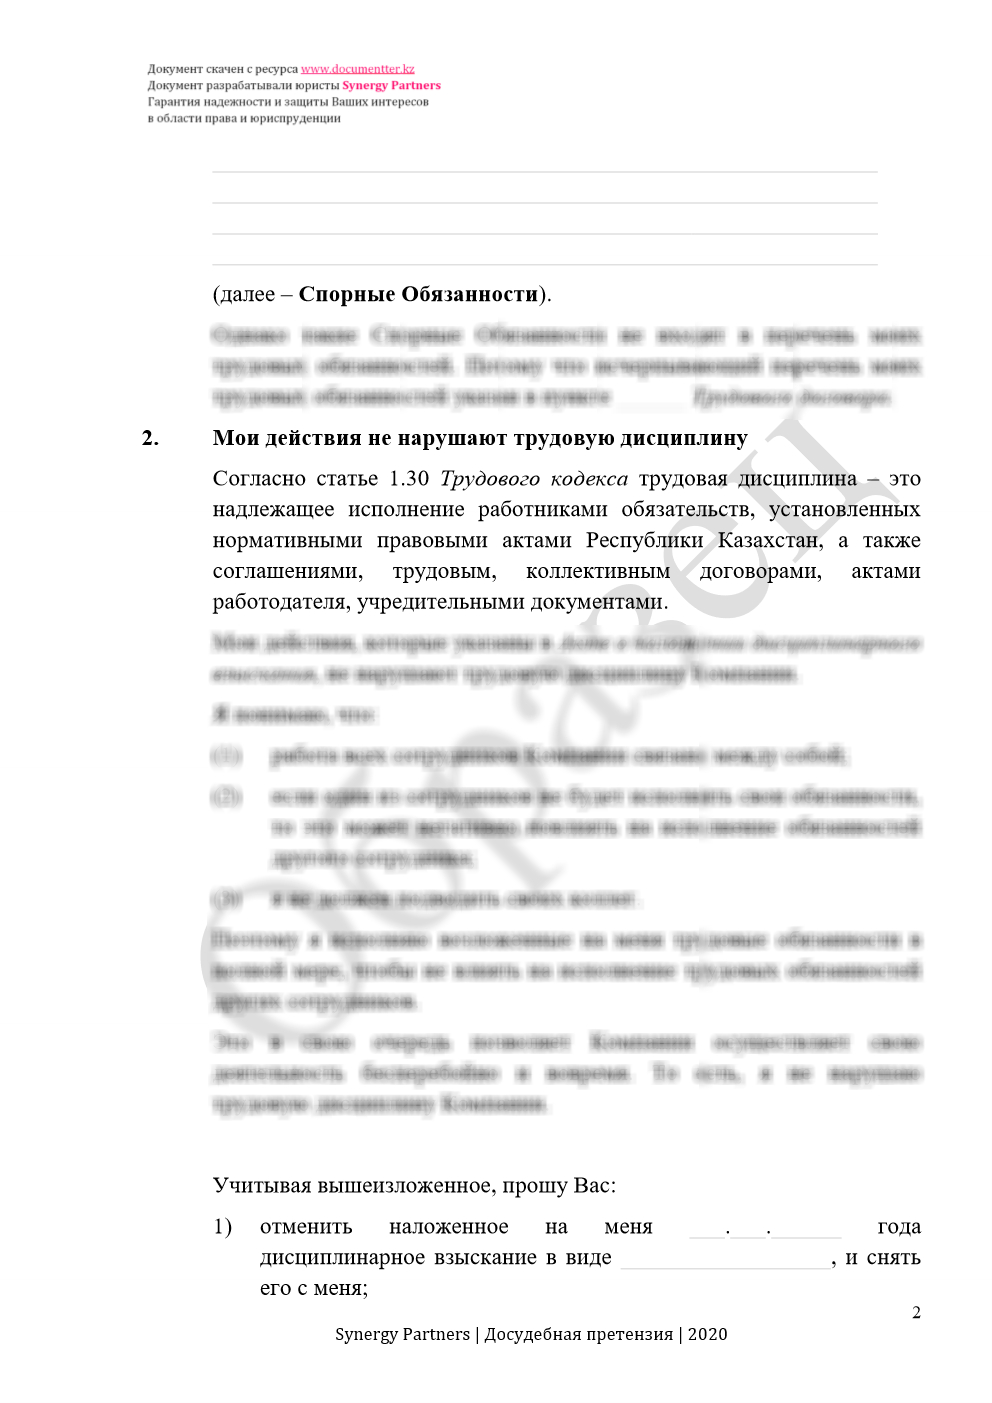 Досудебная претензия, если незаконно наложили дисциплинарное взыскание | documentterkz.com в Казахстане